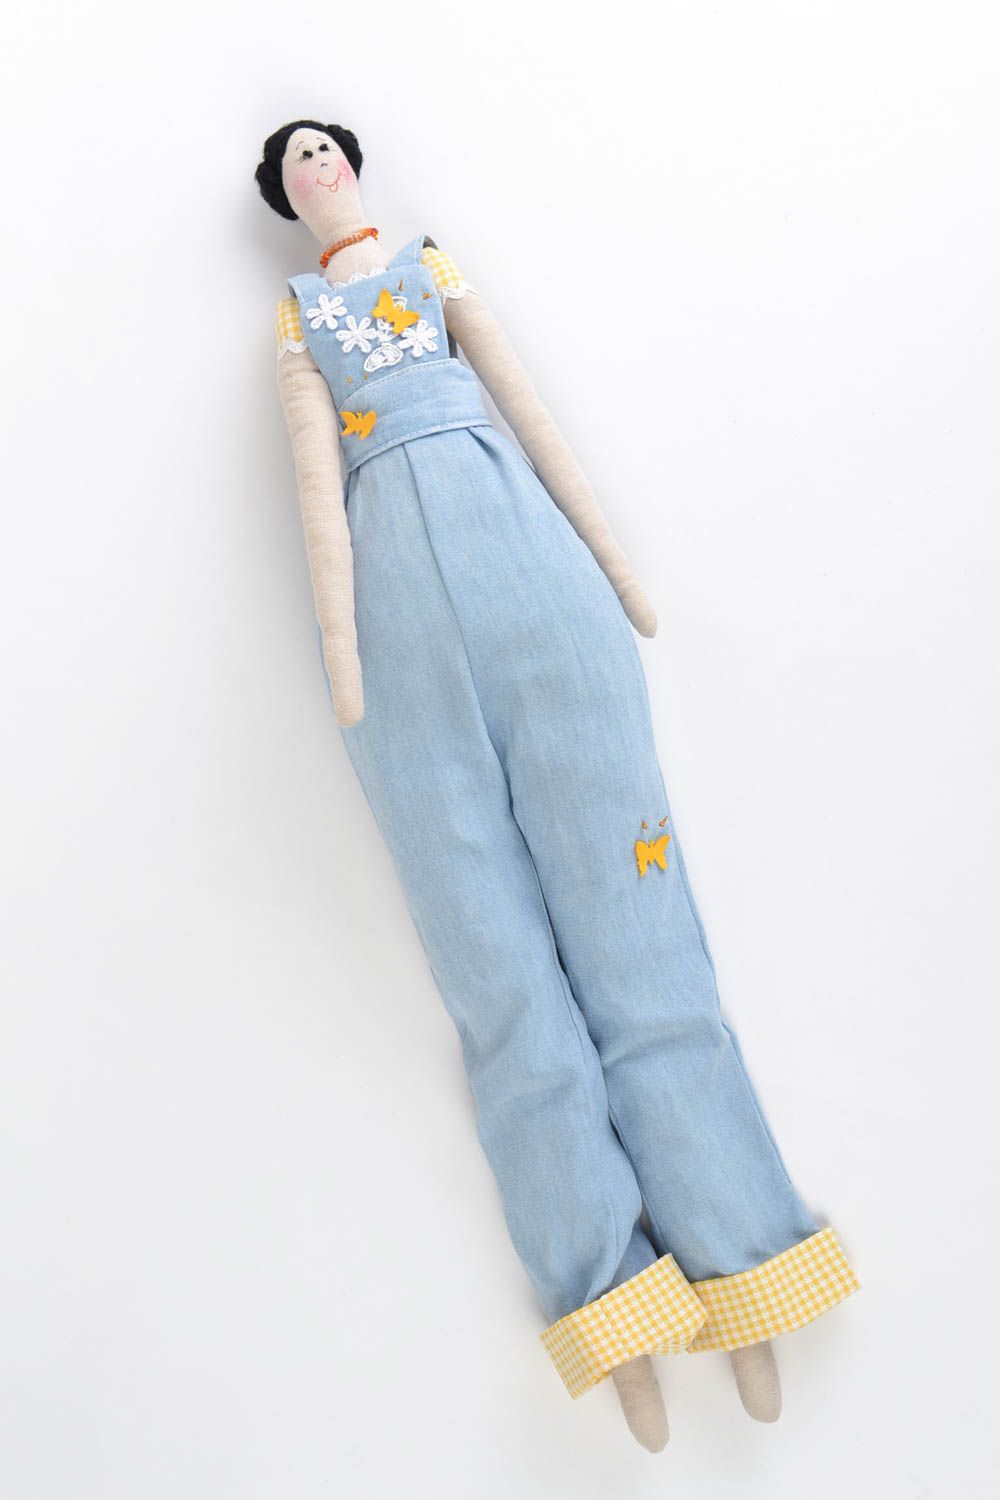 Авторская кукла из натуральных тканей игрушка ручной работы красивая детская фото 3